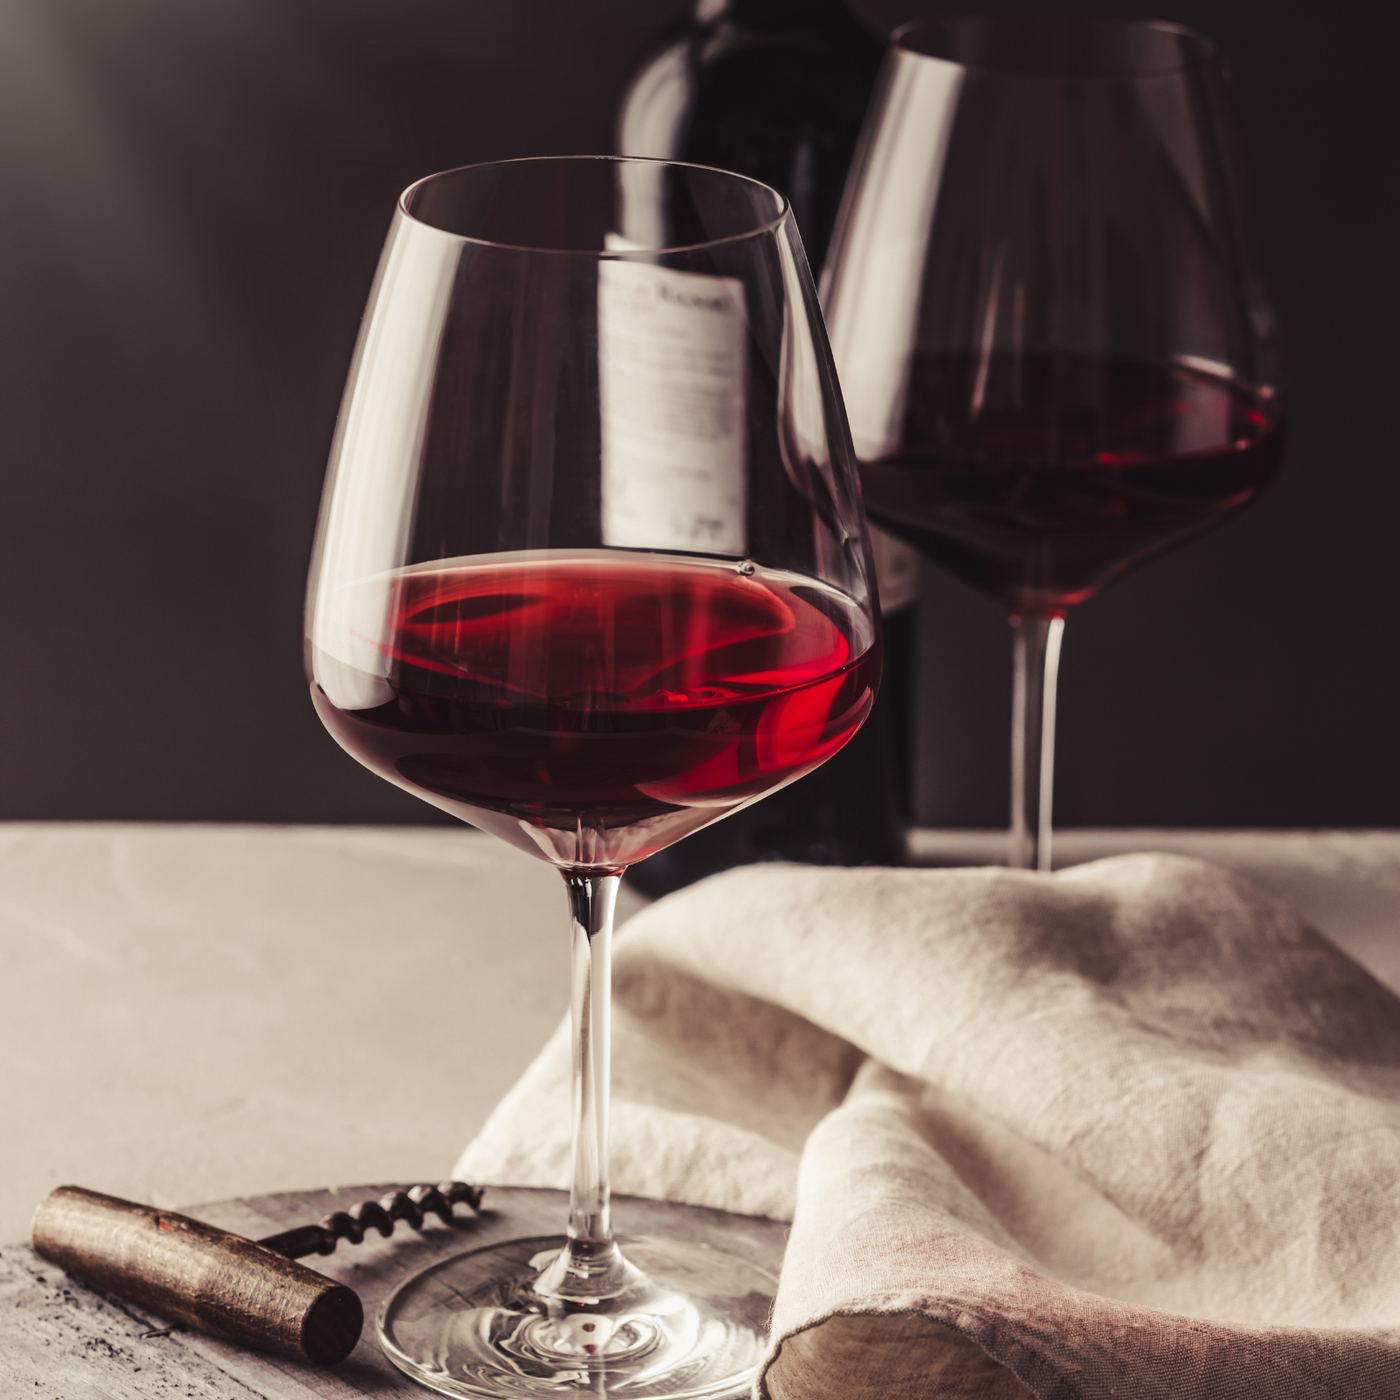 Rode wijn aanbiedingen voor elk budget vind je bij Flesjewijn.com